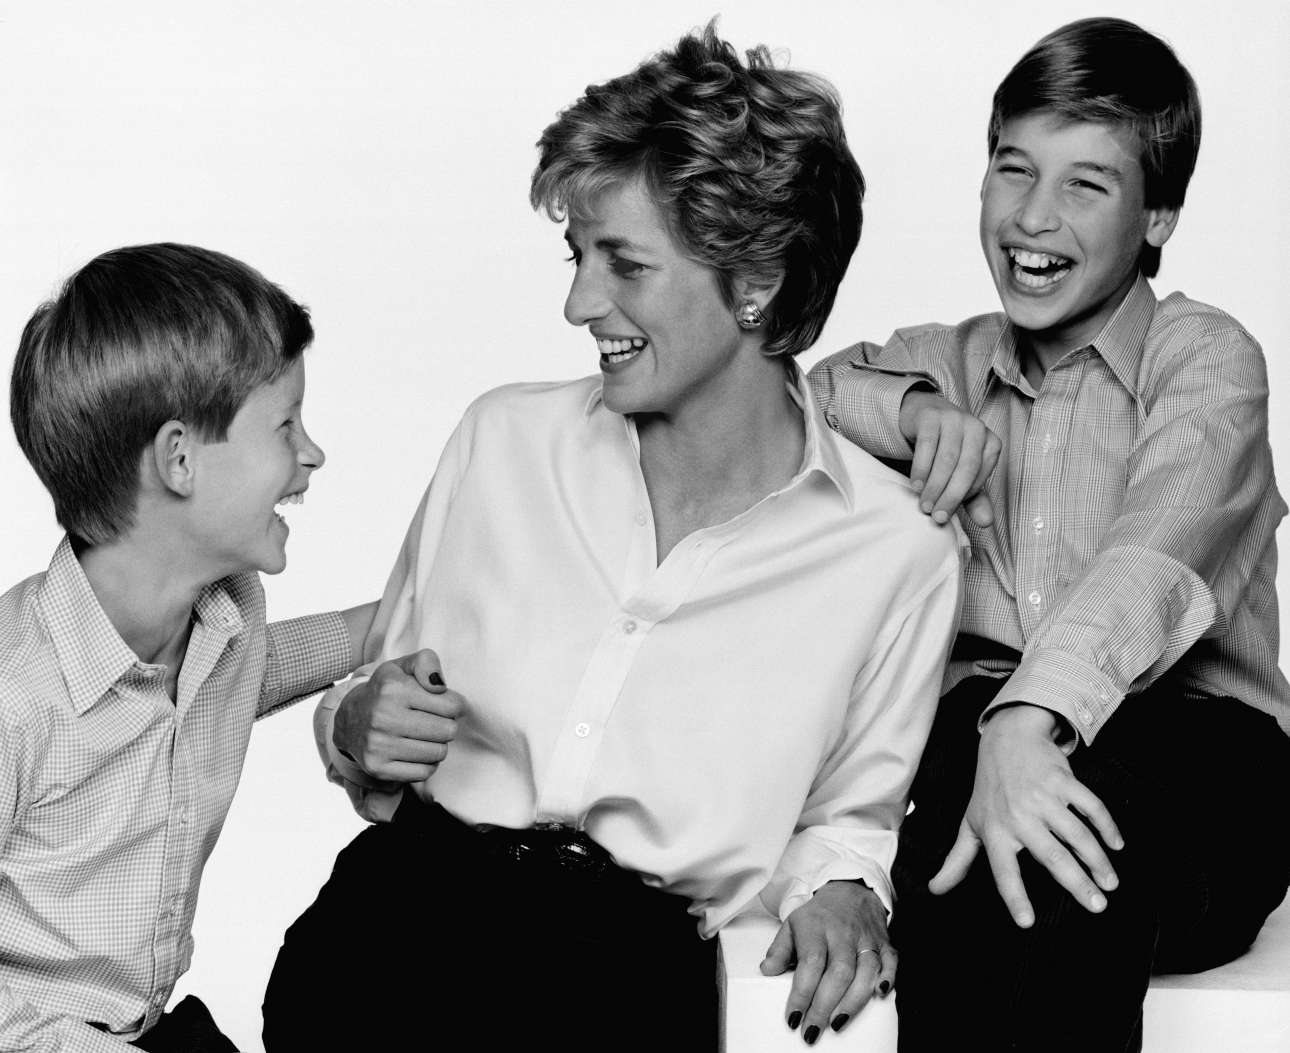 Ενα τρυφερό στιγμιότυπο ανάμεσα στην πριγκίπισα Νταϊάνα και τους δύο γιους της, τον πρίγκιπα Ουίλιαμ και τον πρίγκιπα Χάρι, το 1994